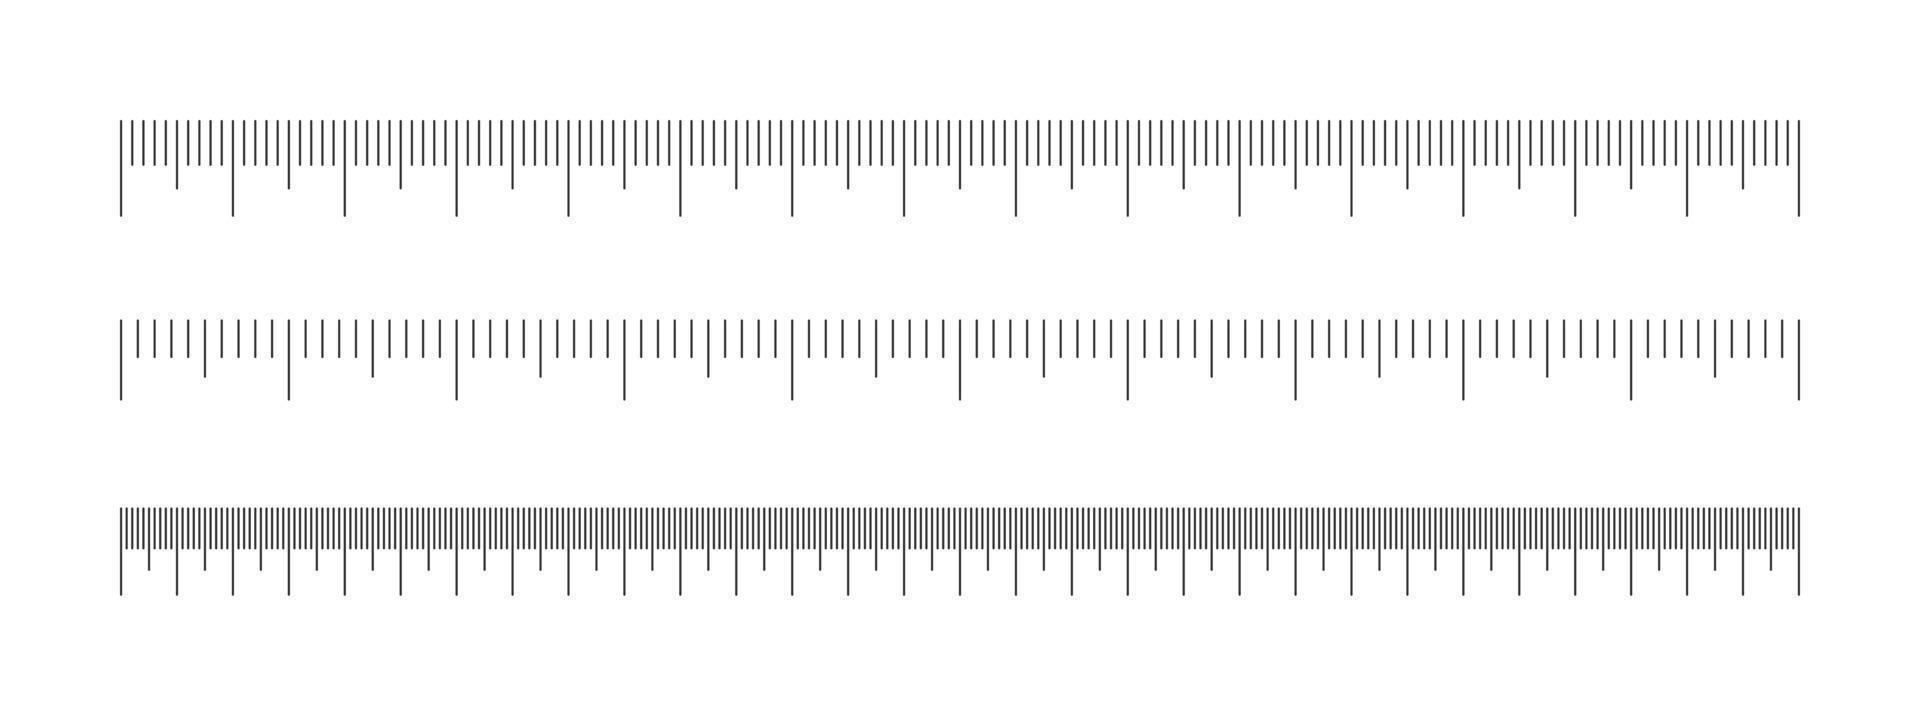 escala do régua definir. horizontal medindo gráfico com centímetros e milímetros marcação. distância, altura ou comprimento medição ferramenta vetor